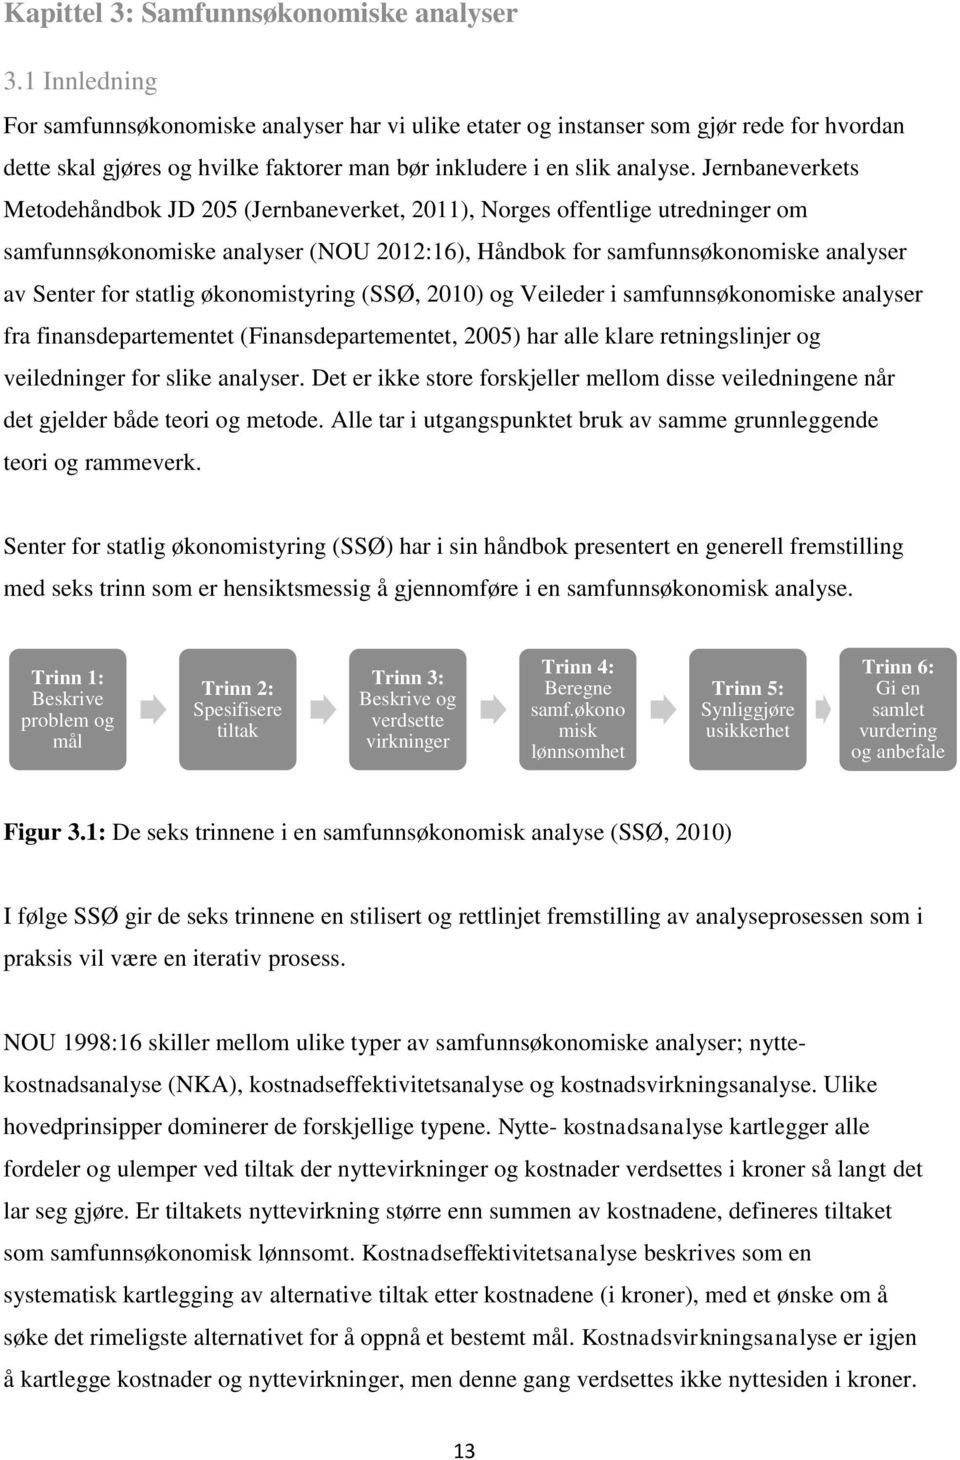 Jernbaneverkets Metodehåndbok JD 205 (Jernbaneverket, 2011), Norges offentlige utredninger om samfunnsøkonomiske analyser (NOU 2012:16), Håndbok for samfunnsøkonomiske analyser av Senter for statlig